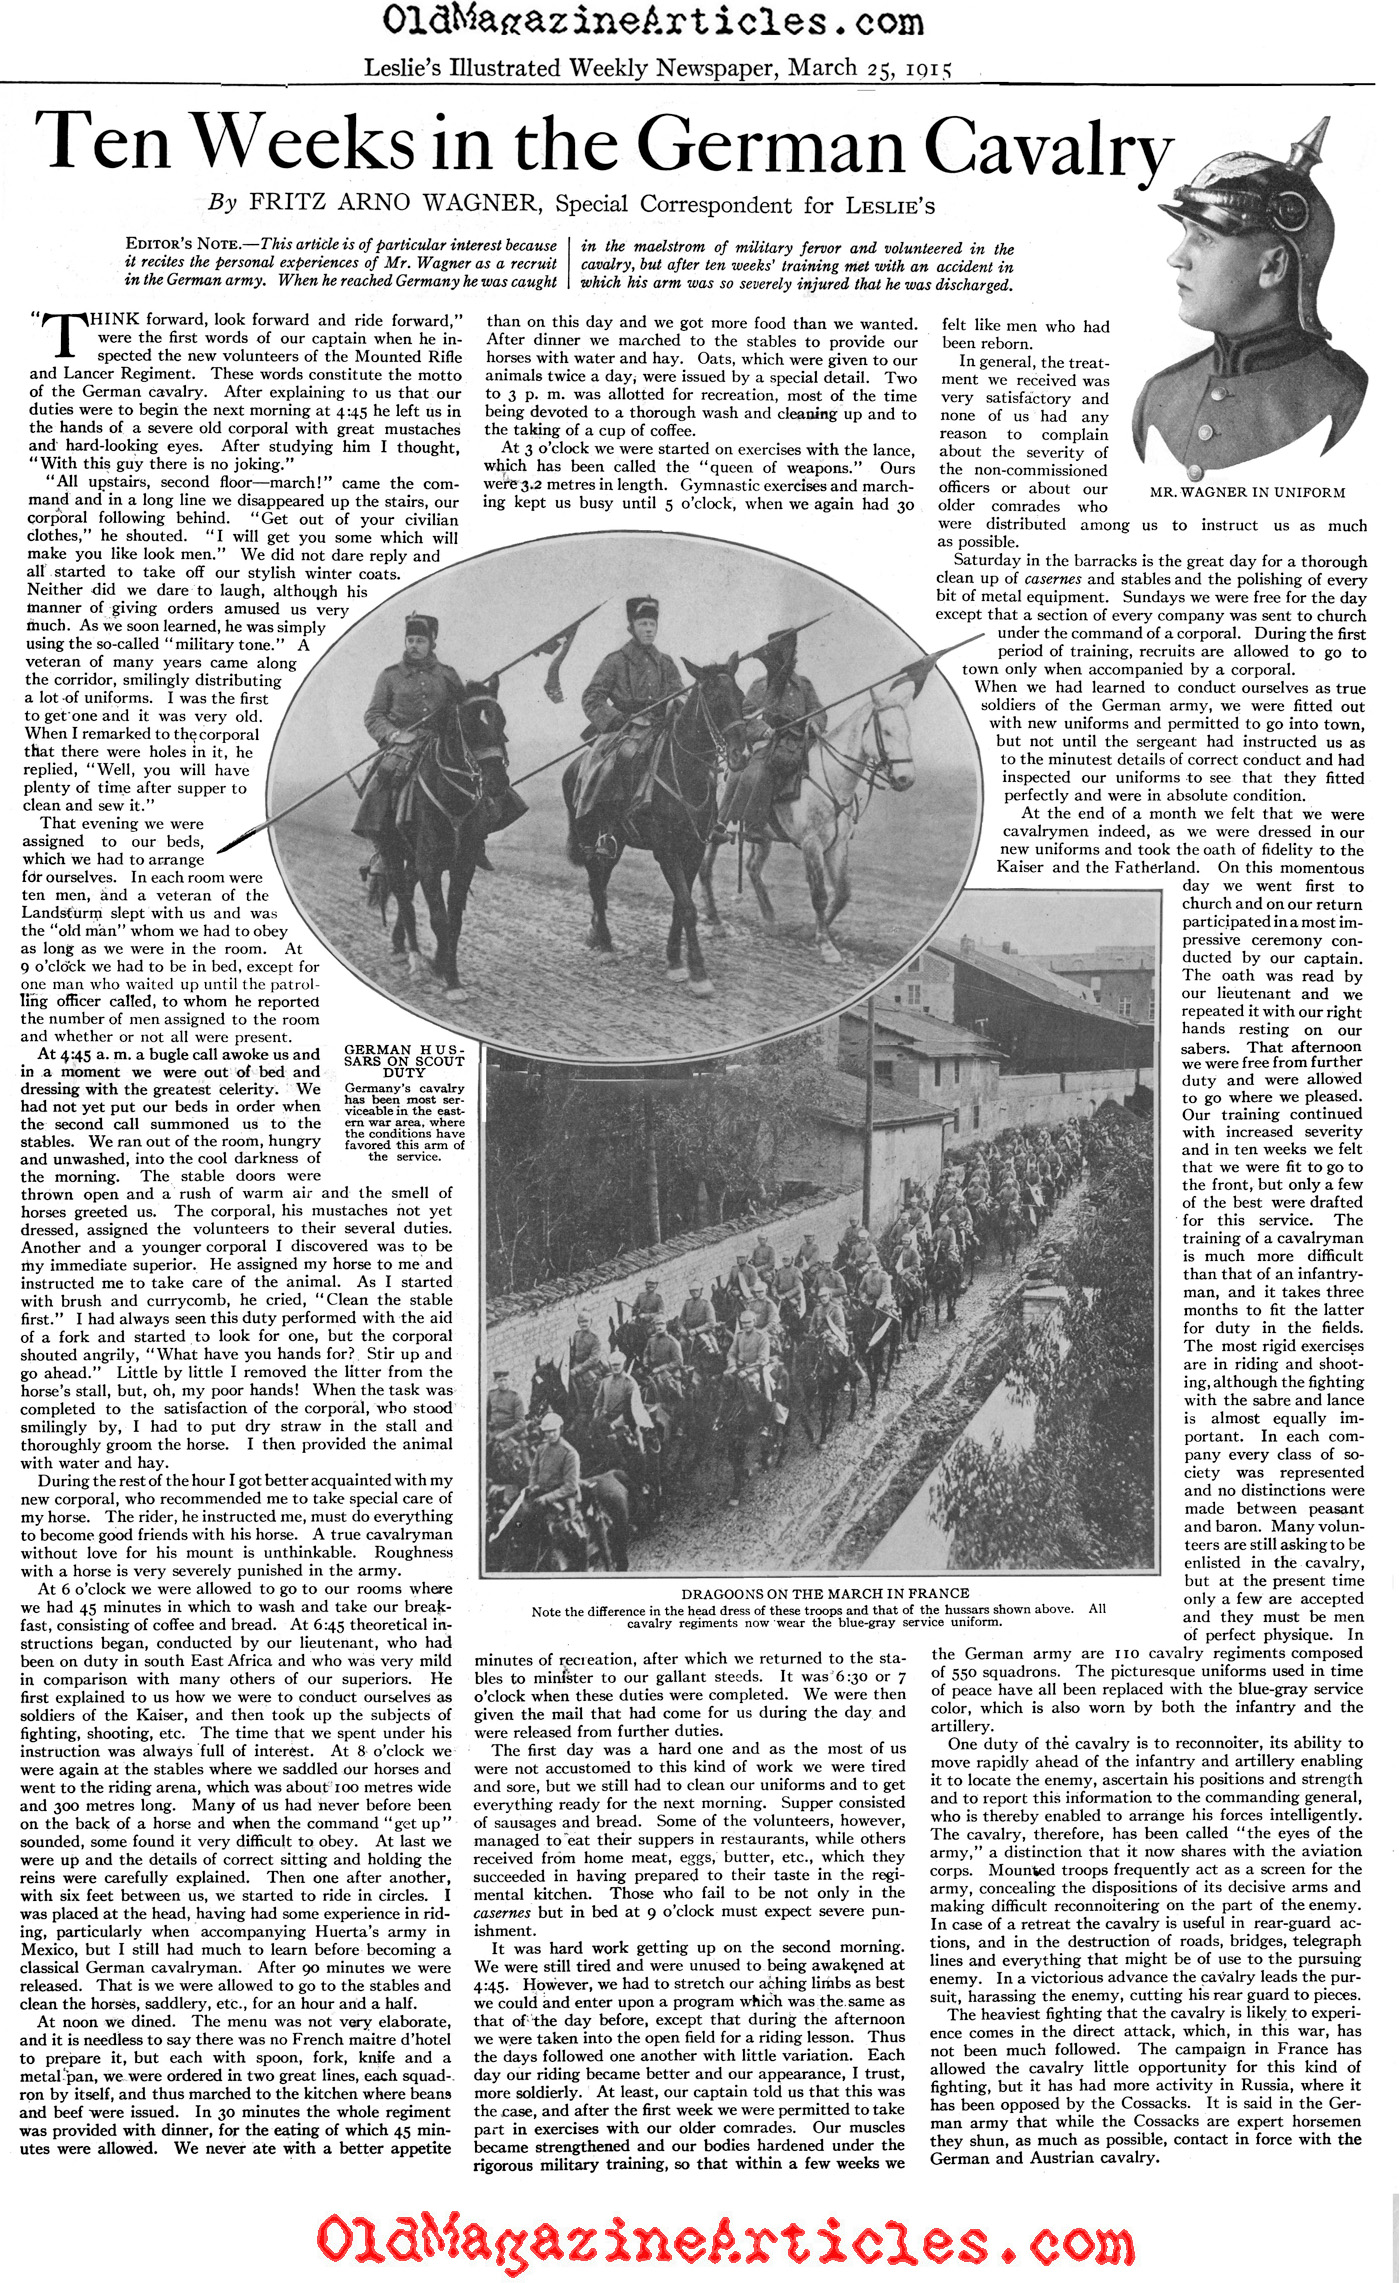  German Cavalry Memoir (Leslie's Weekly, 1915)